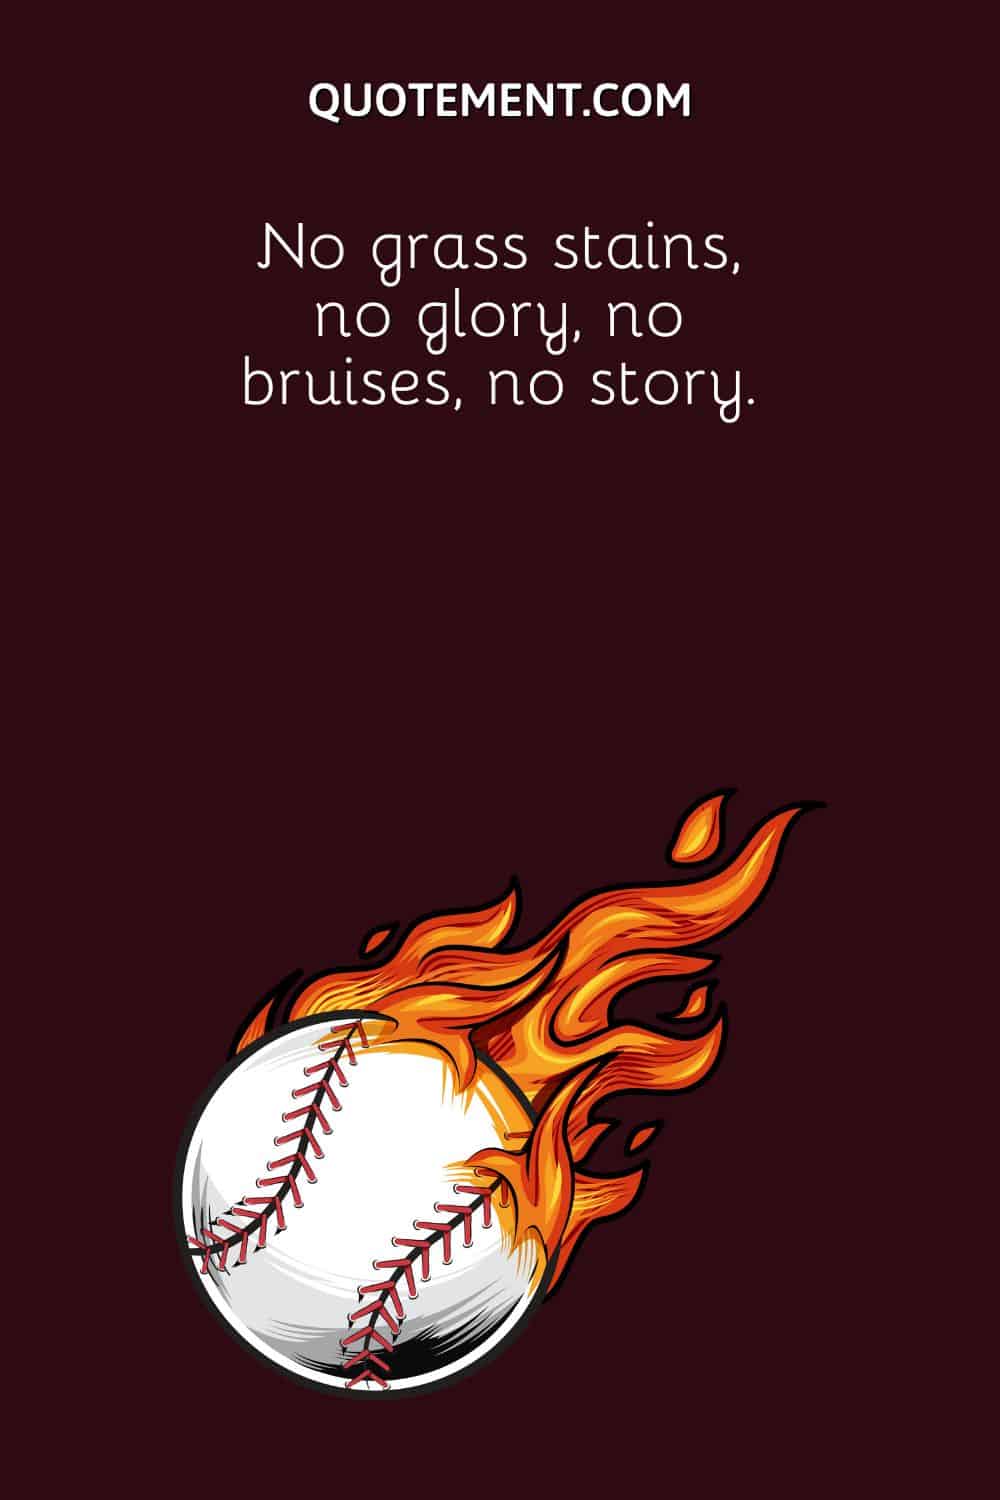 No grass stains, no glory, no bruises, no story